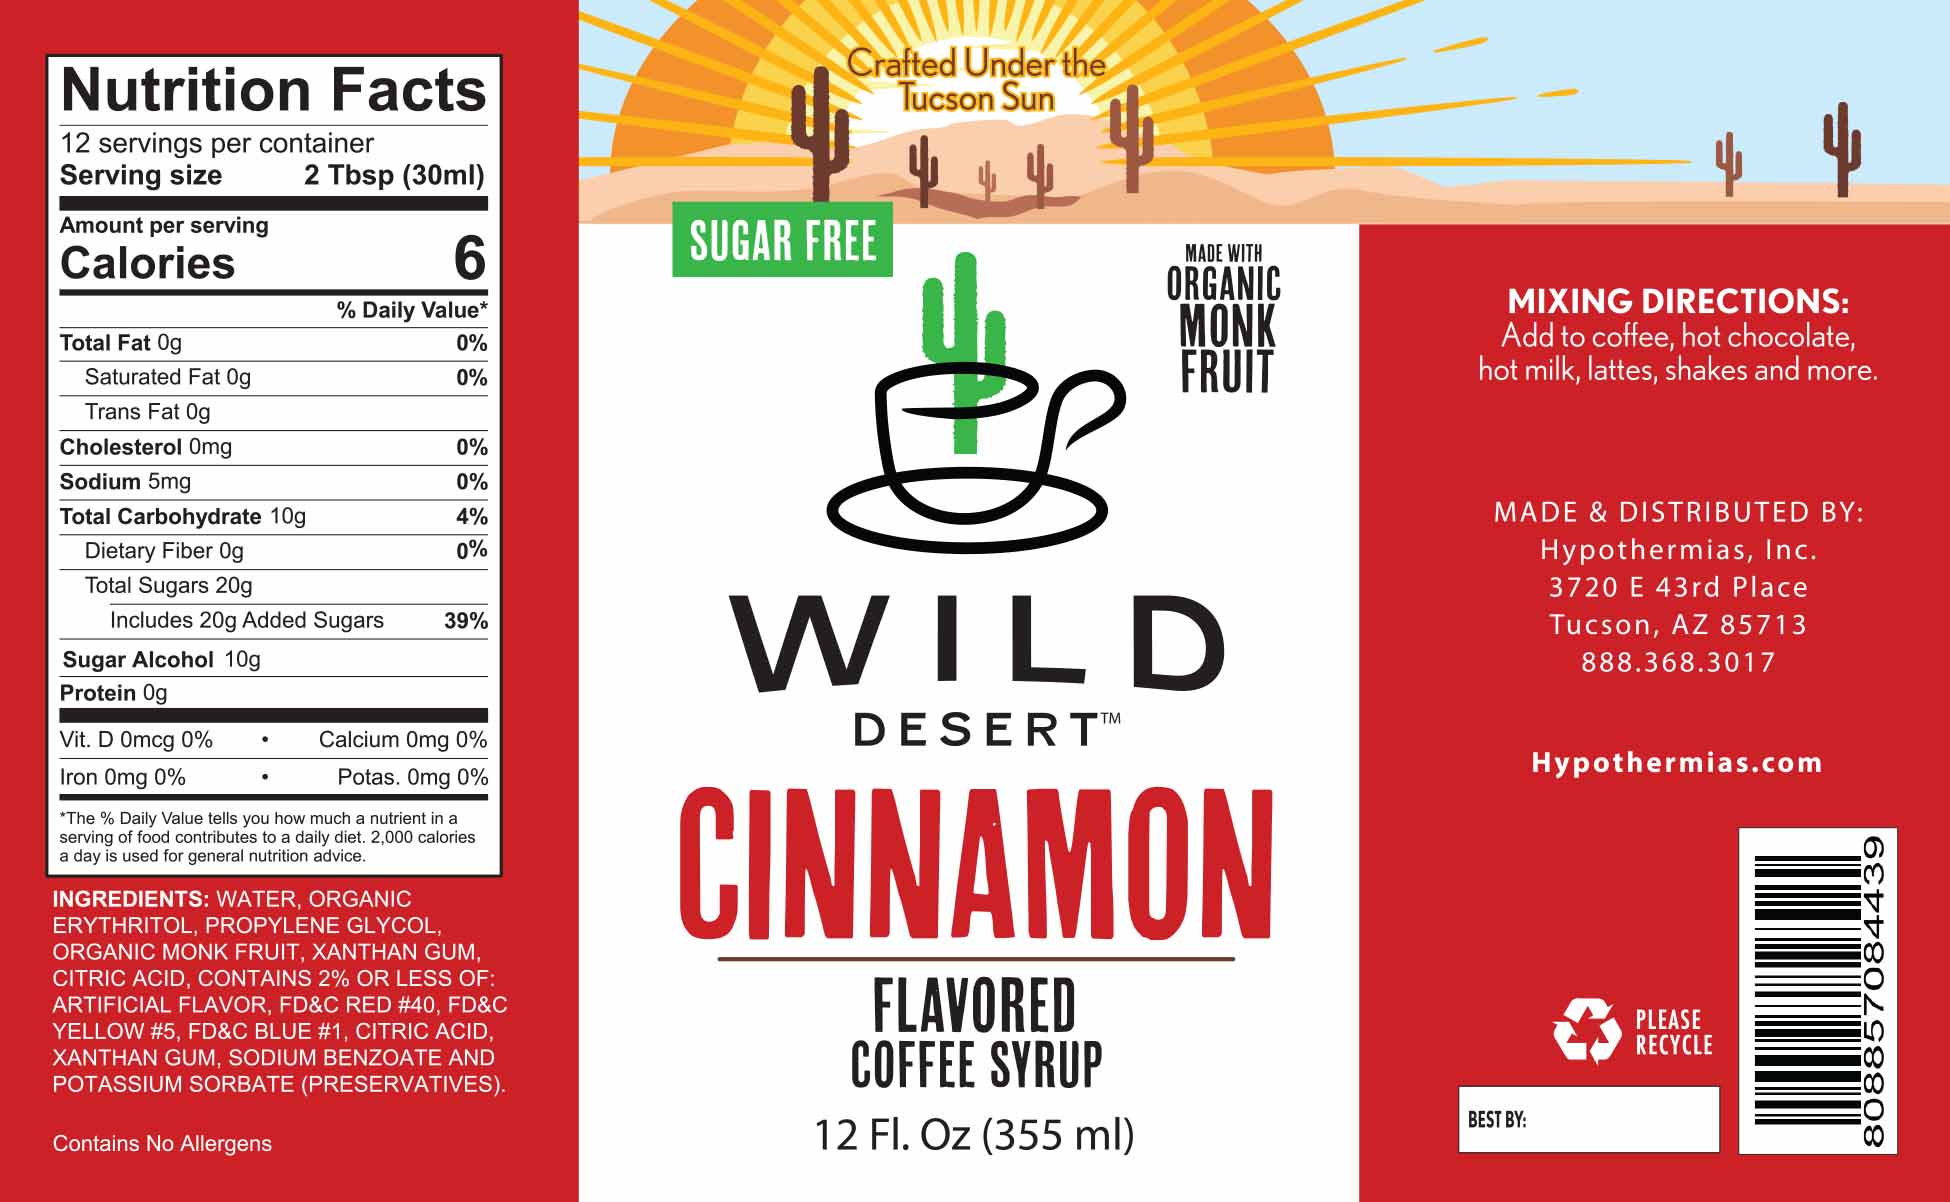 Sugar Free Cinnamon Coffee Syrup - Hypothermias.com